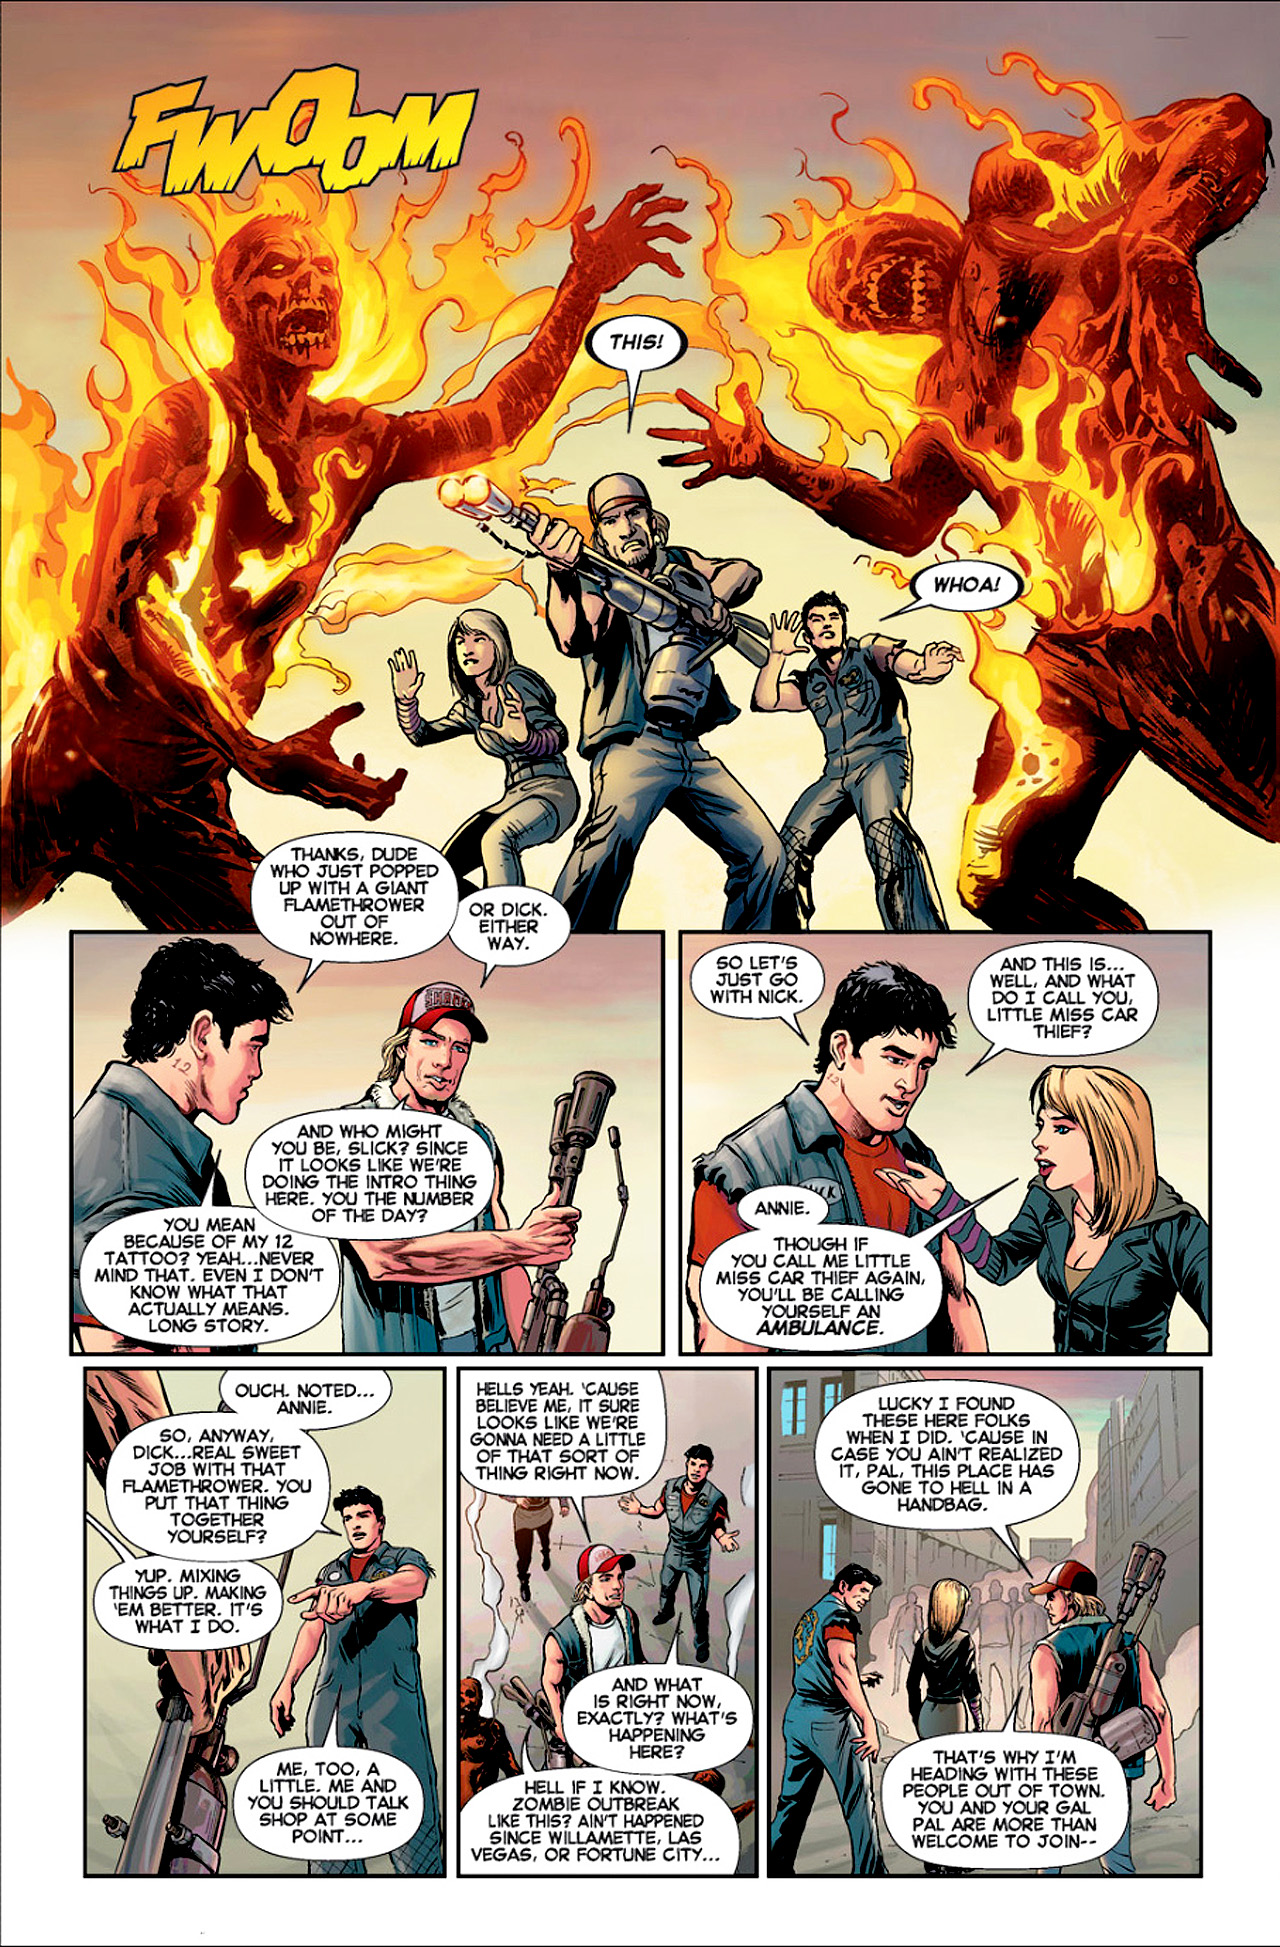 Dead Rising 3 Full | Read Dead Rising 3 Full comic online in high quality.  Read Full Comic online for free - Read comics online in high quality .